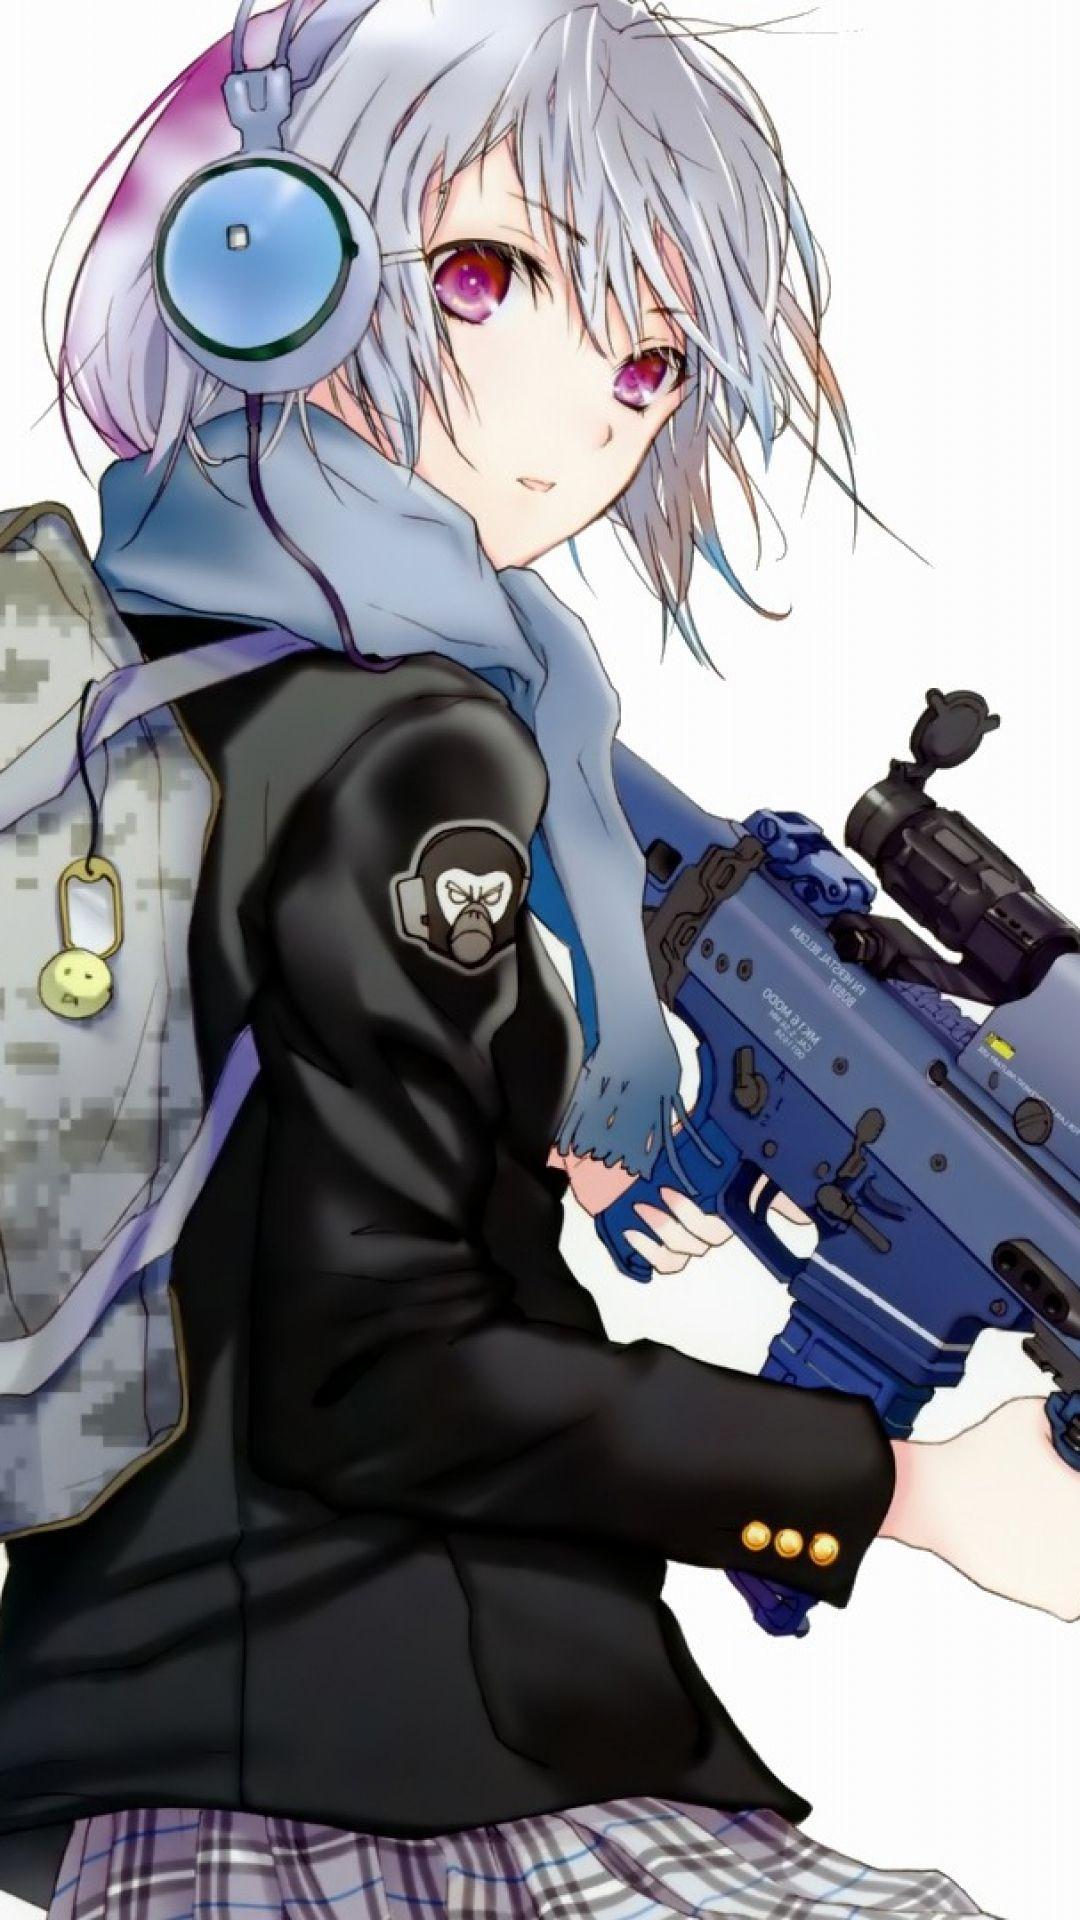 Anime Girl 2019 Wallpaper